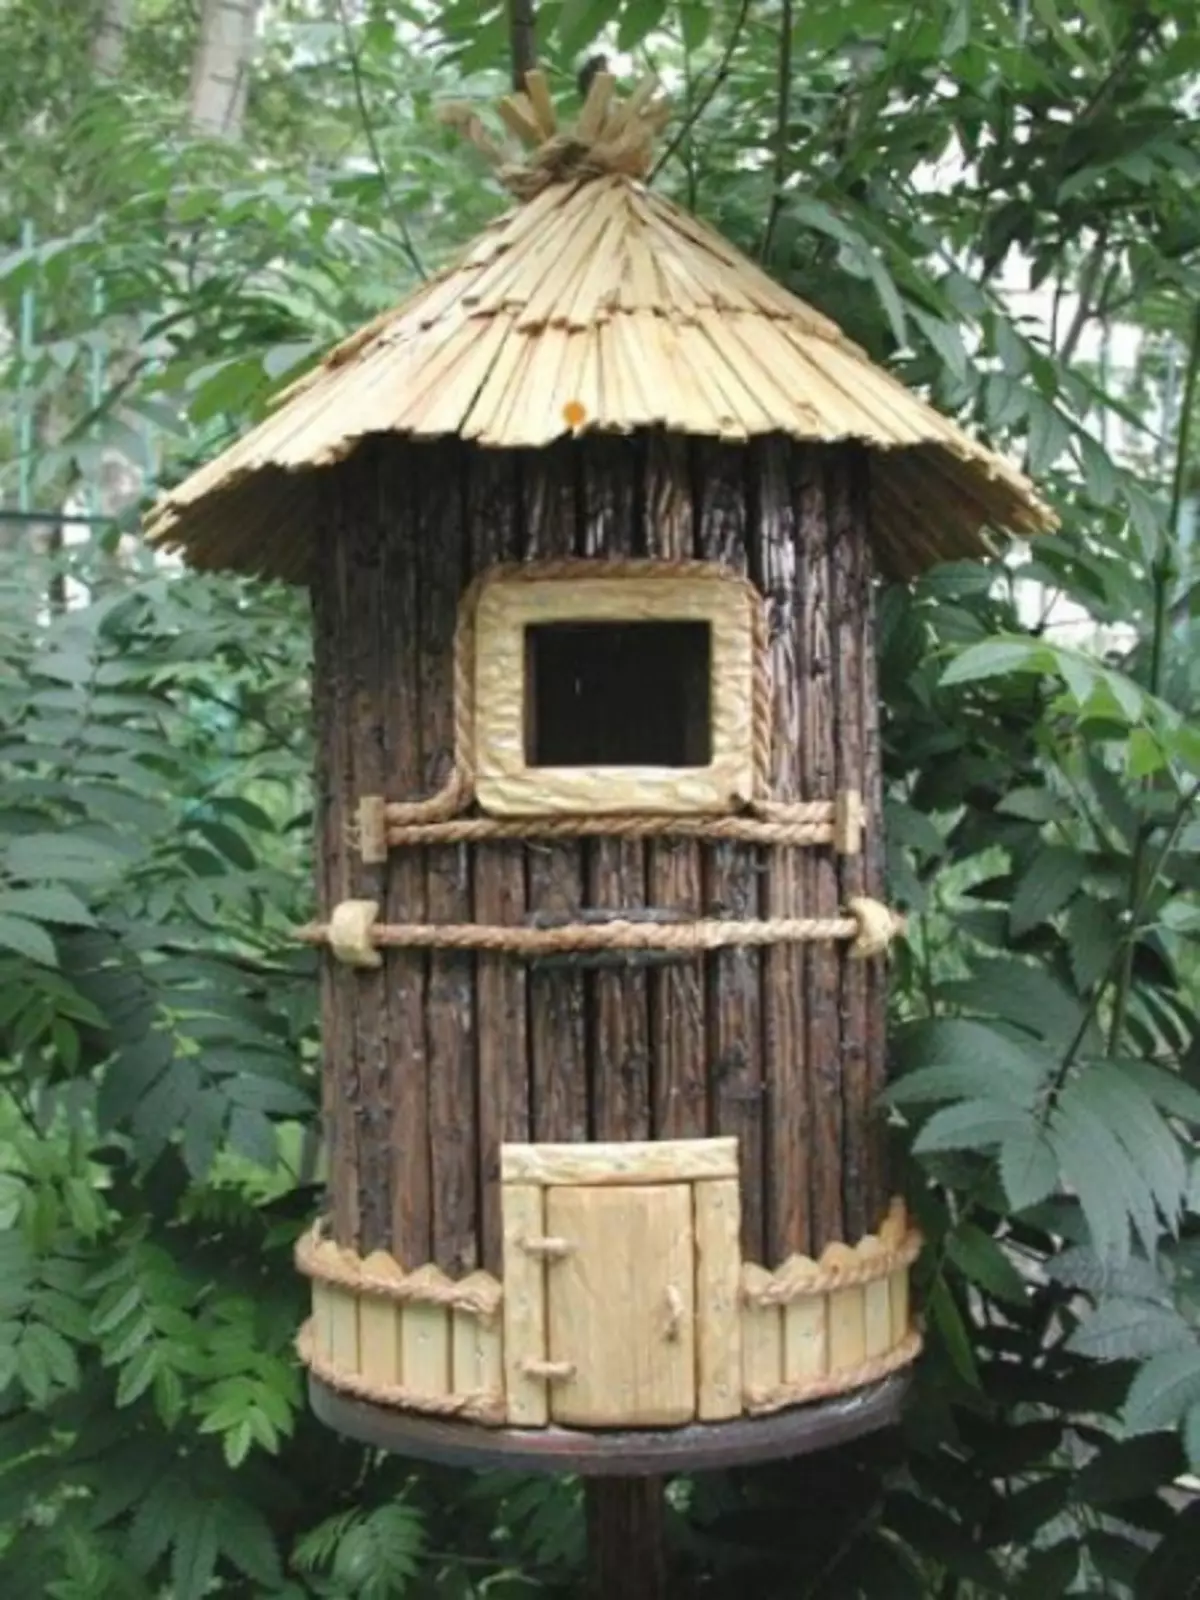 나라 또는 마당에있는 Birdhouse를 어떻게 만드는가? (41 장의 사진)